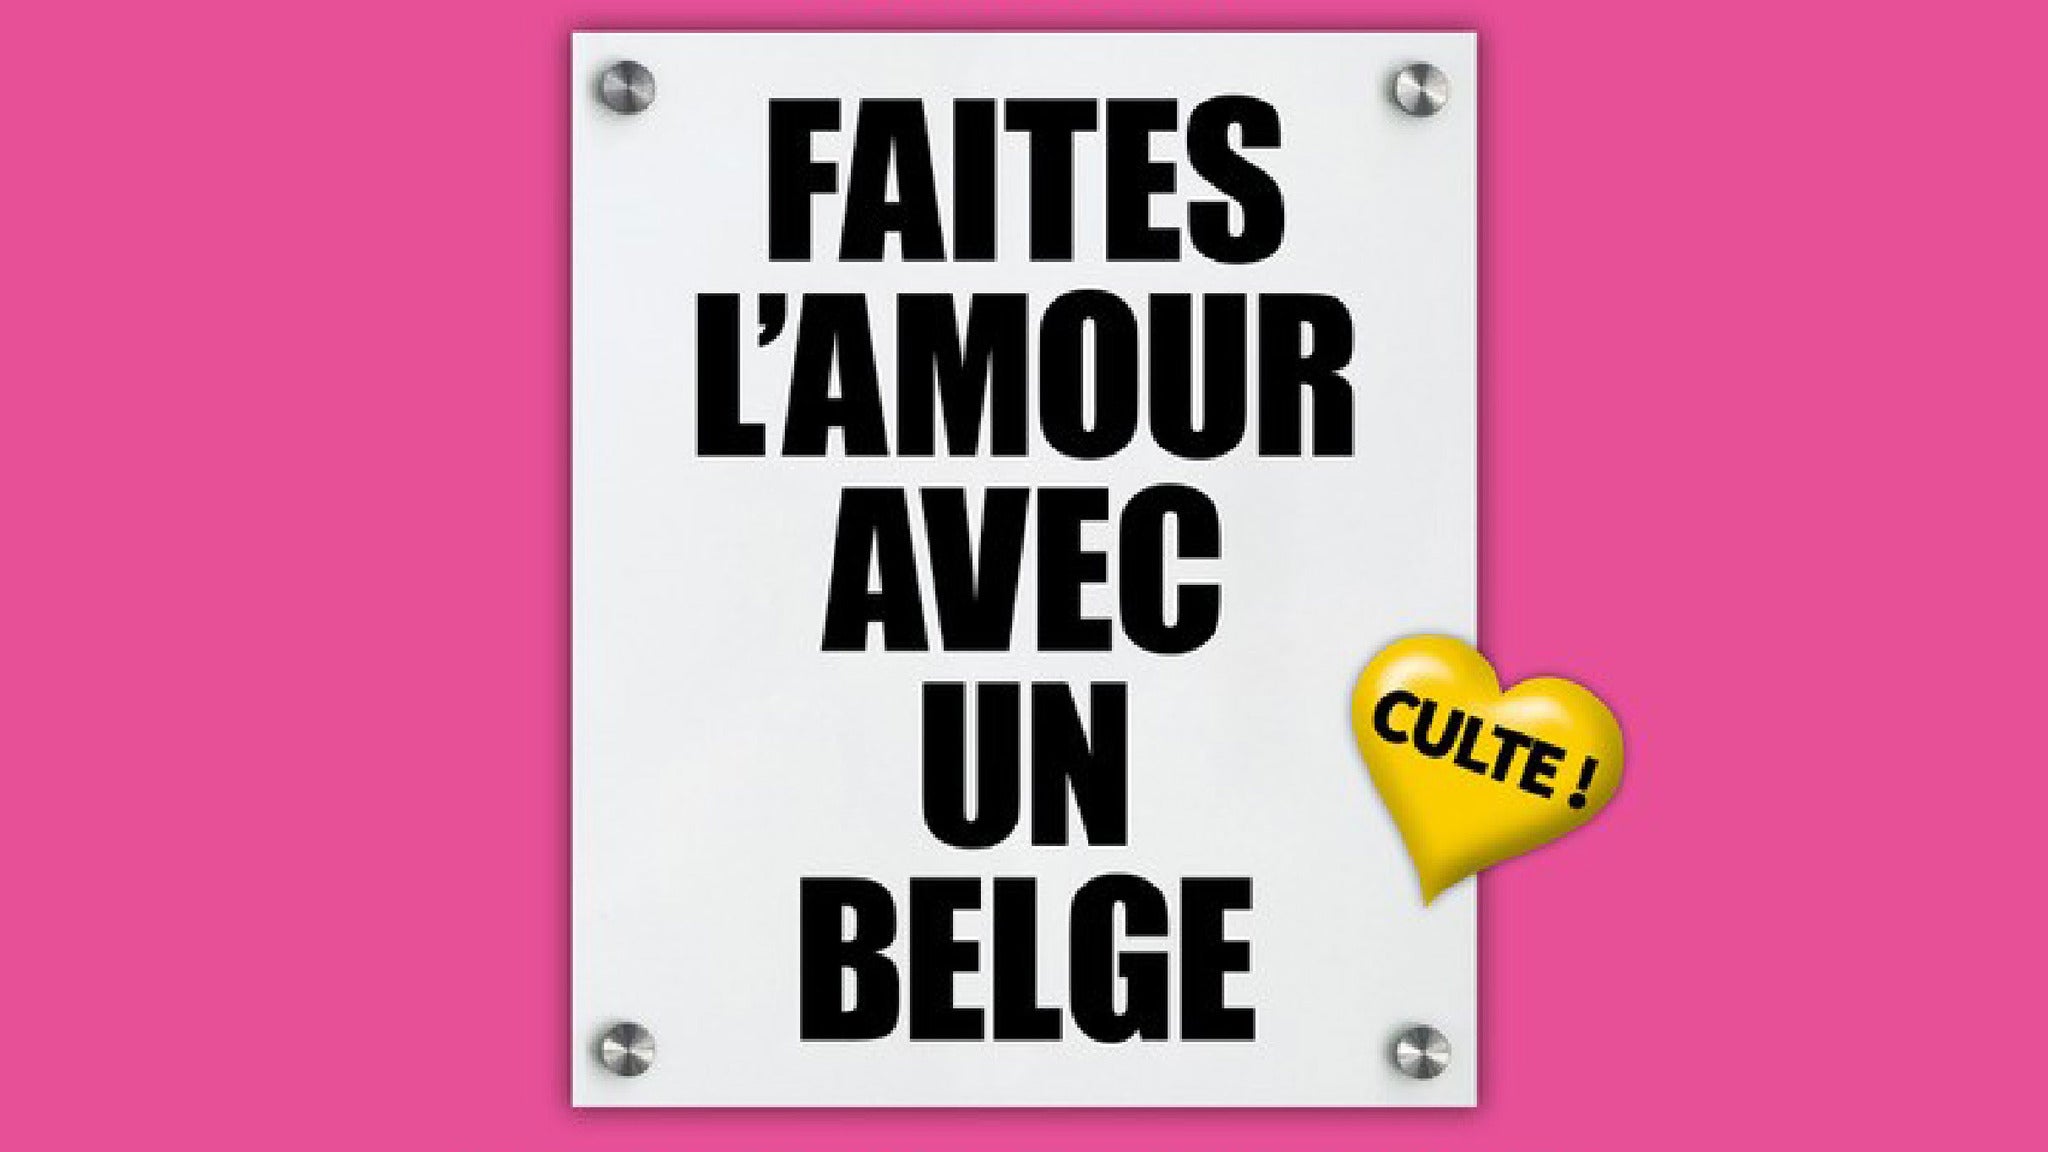 Faites l'amour avec un belge